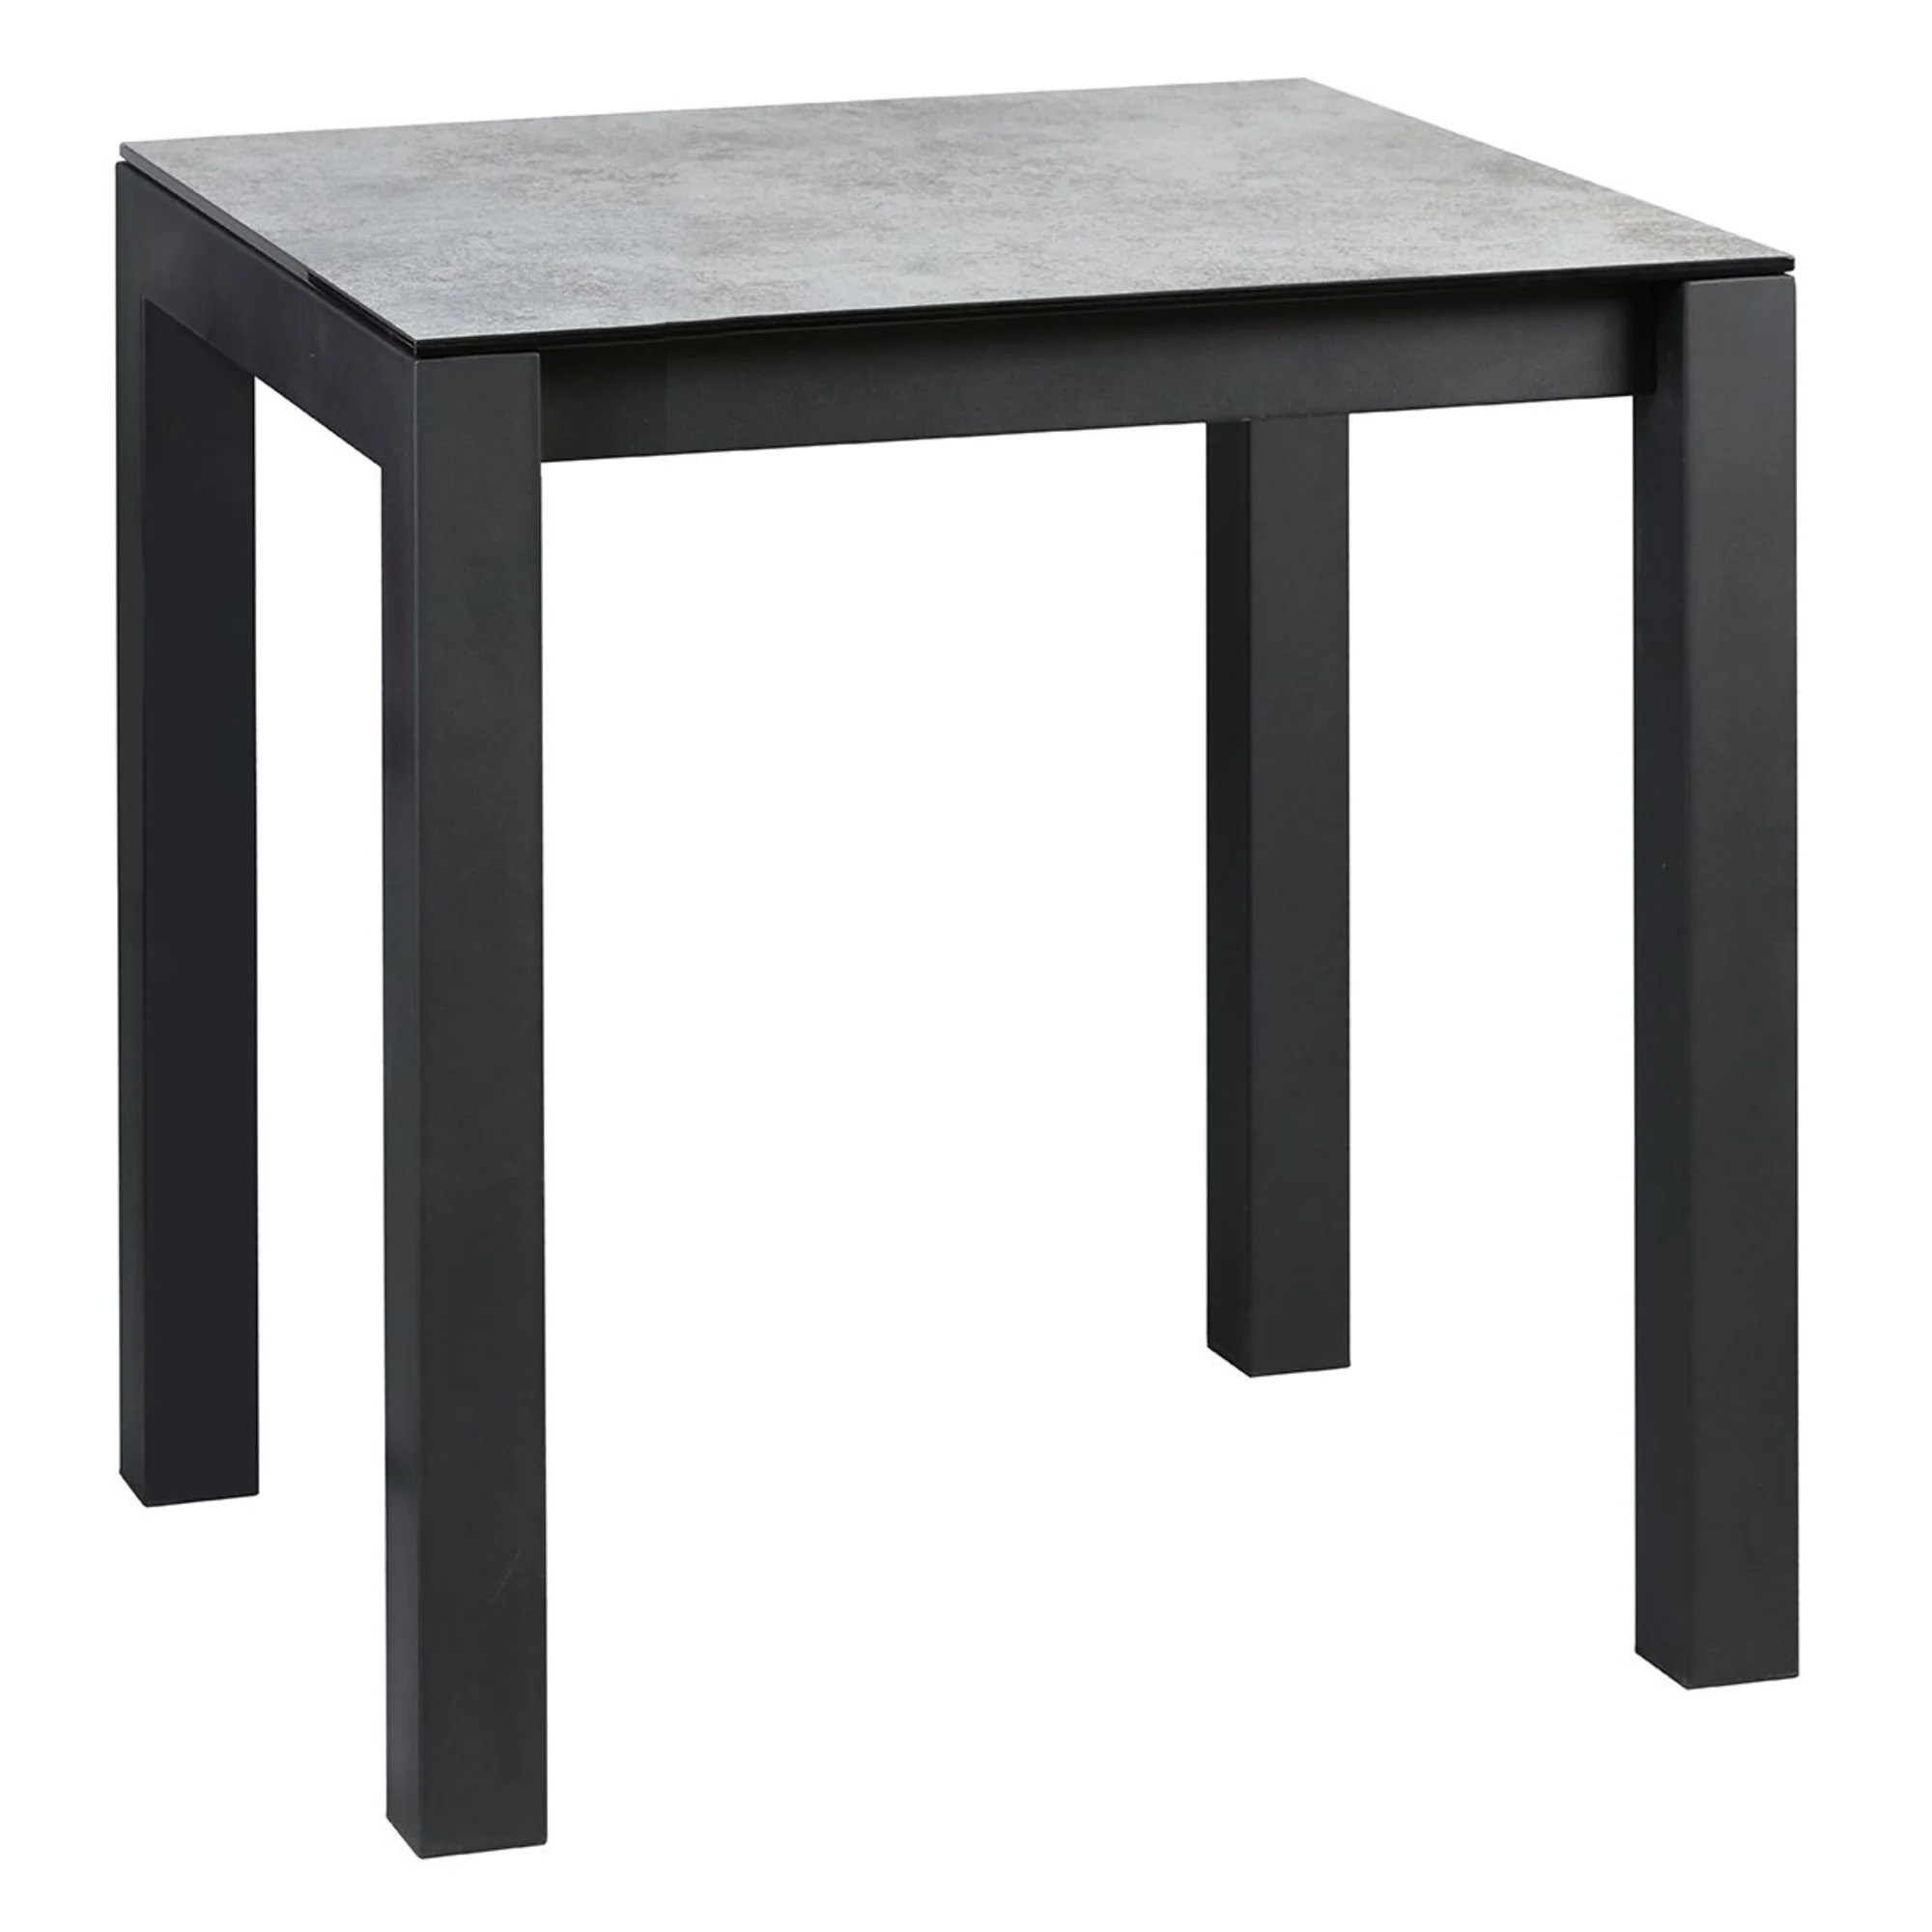 Table haute carrée en teck, table pliante mange debout carré